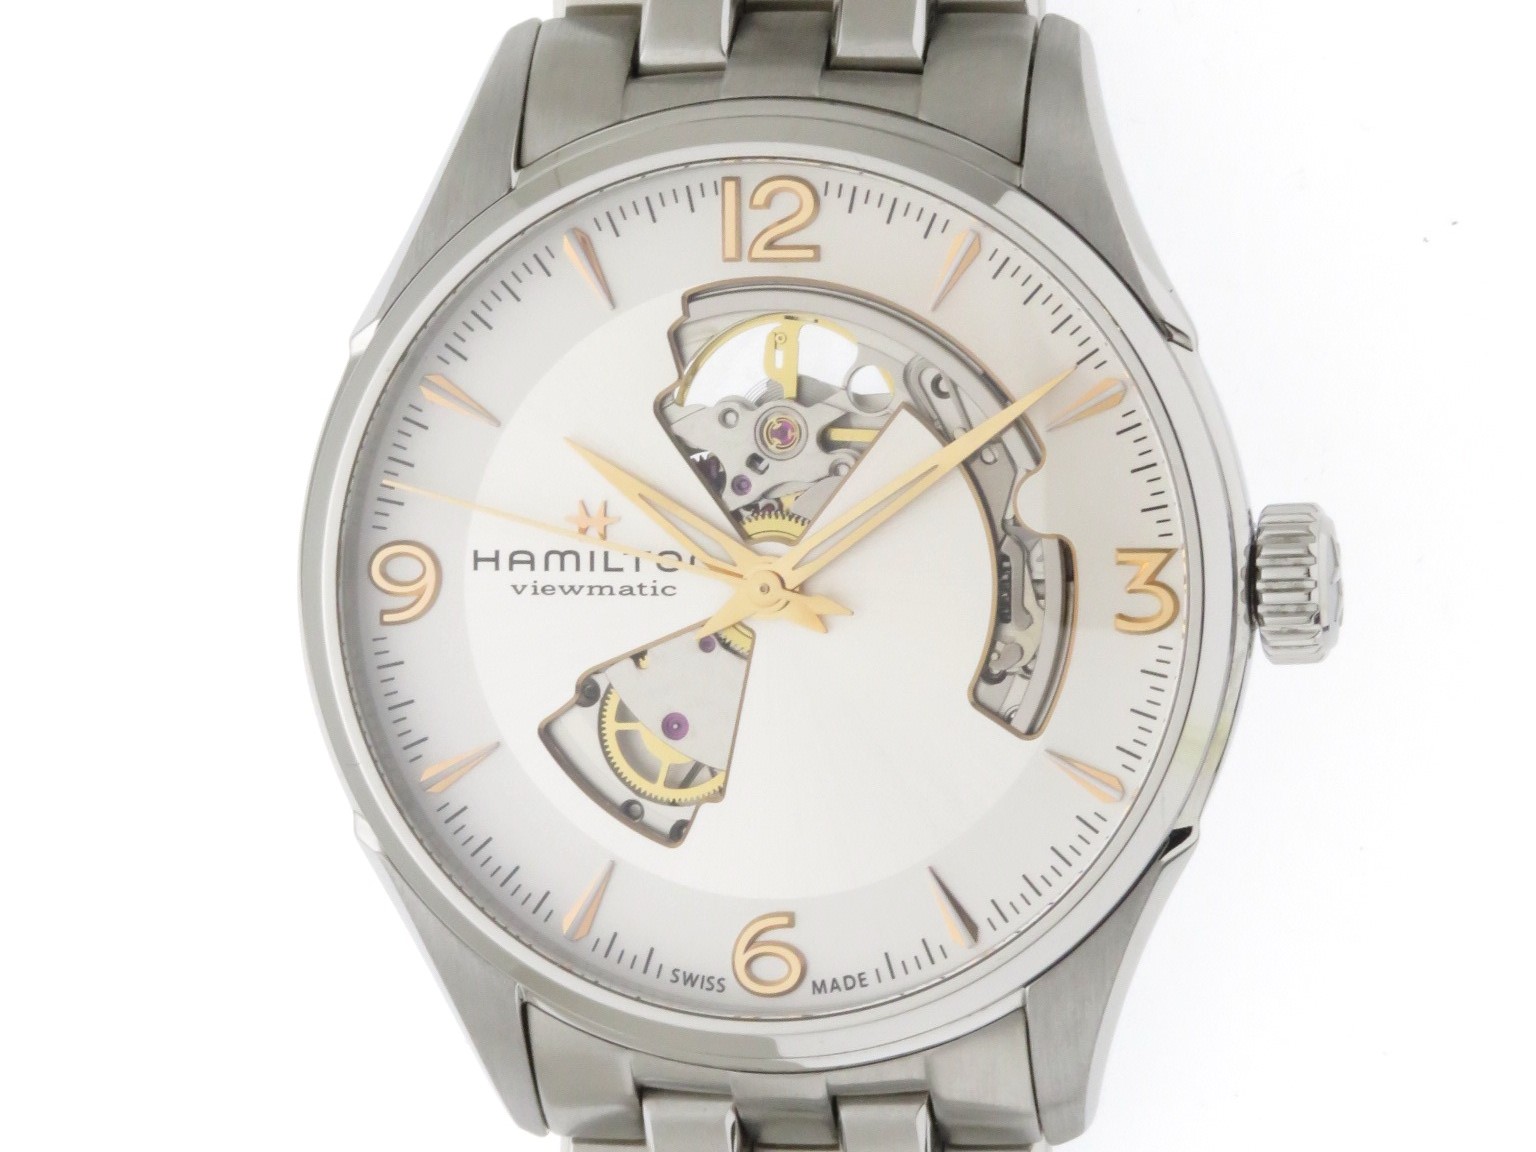 Hamilton ハミルトン 時計 ジャズマスター ビューマチック オープンハート H 自動巻き シルバー文字盤 Ss 男性用時計 430 の購入なら 質 の大黒屋 公式